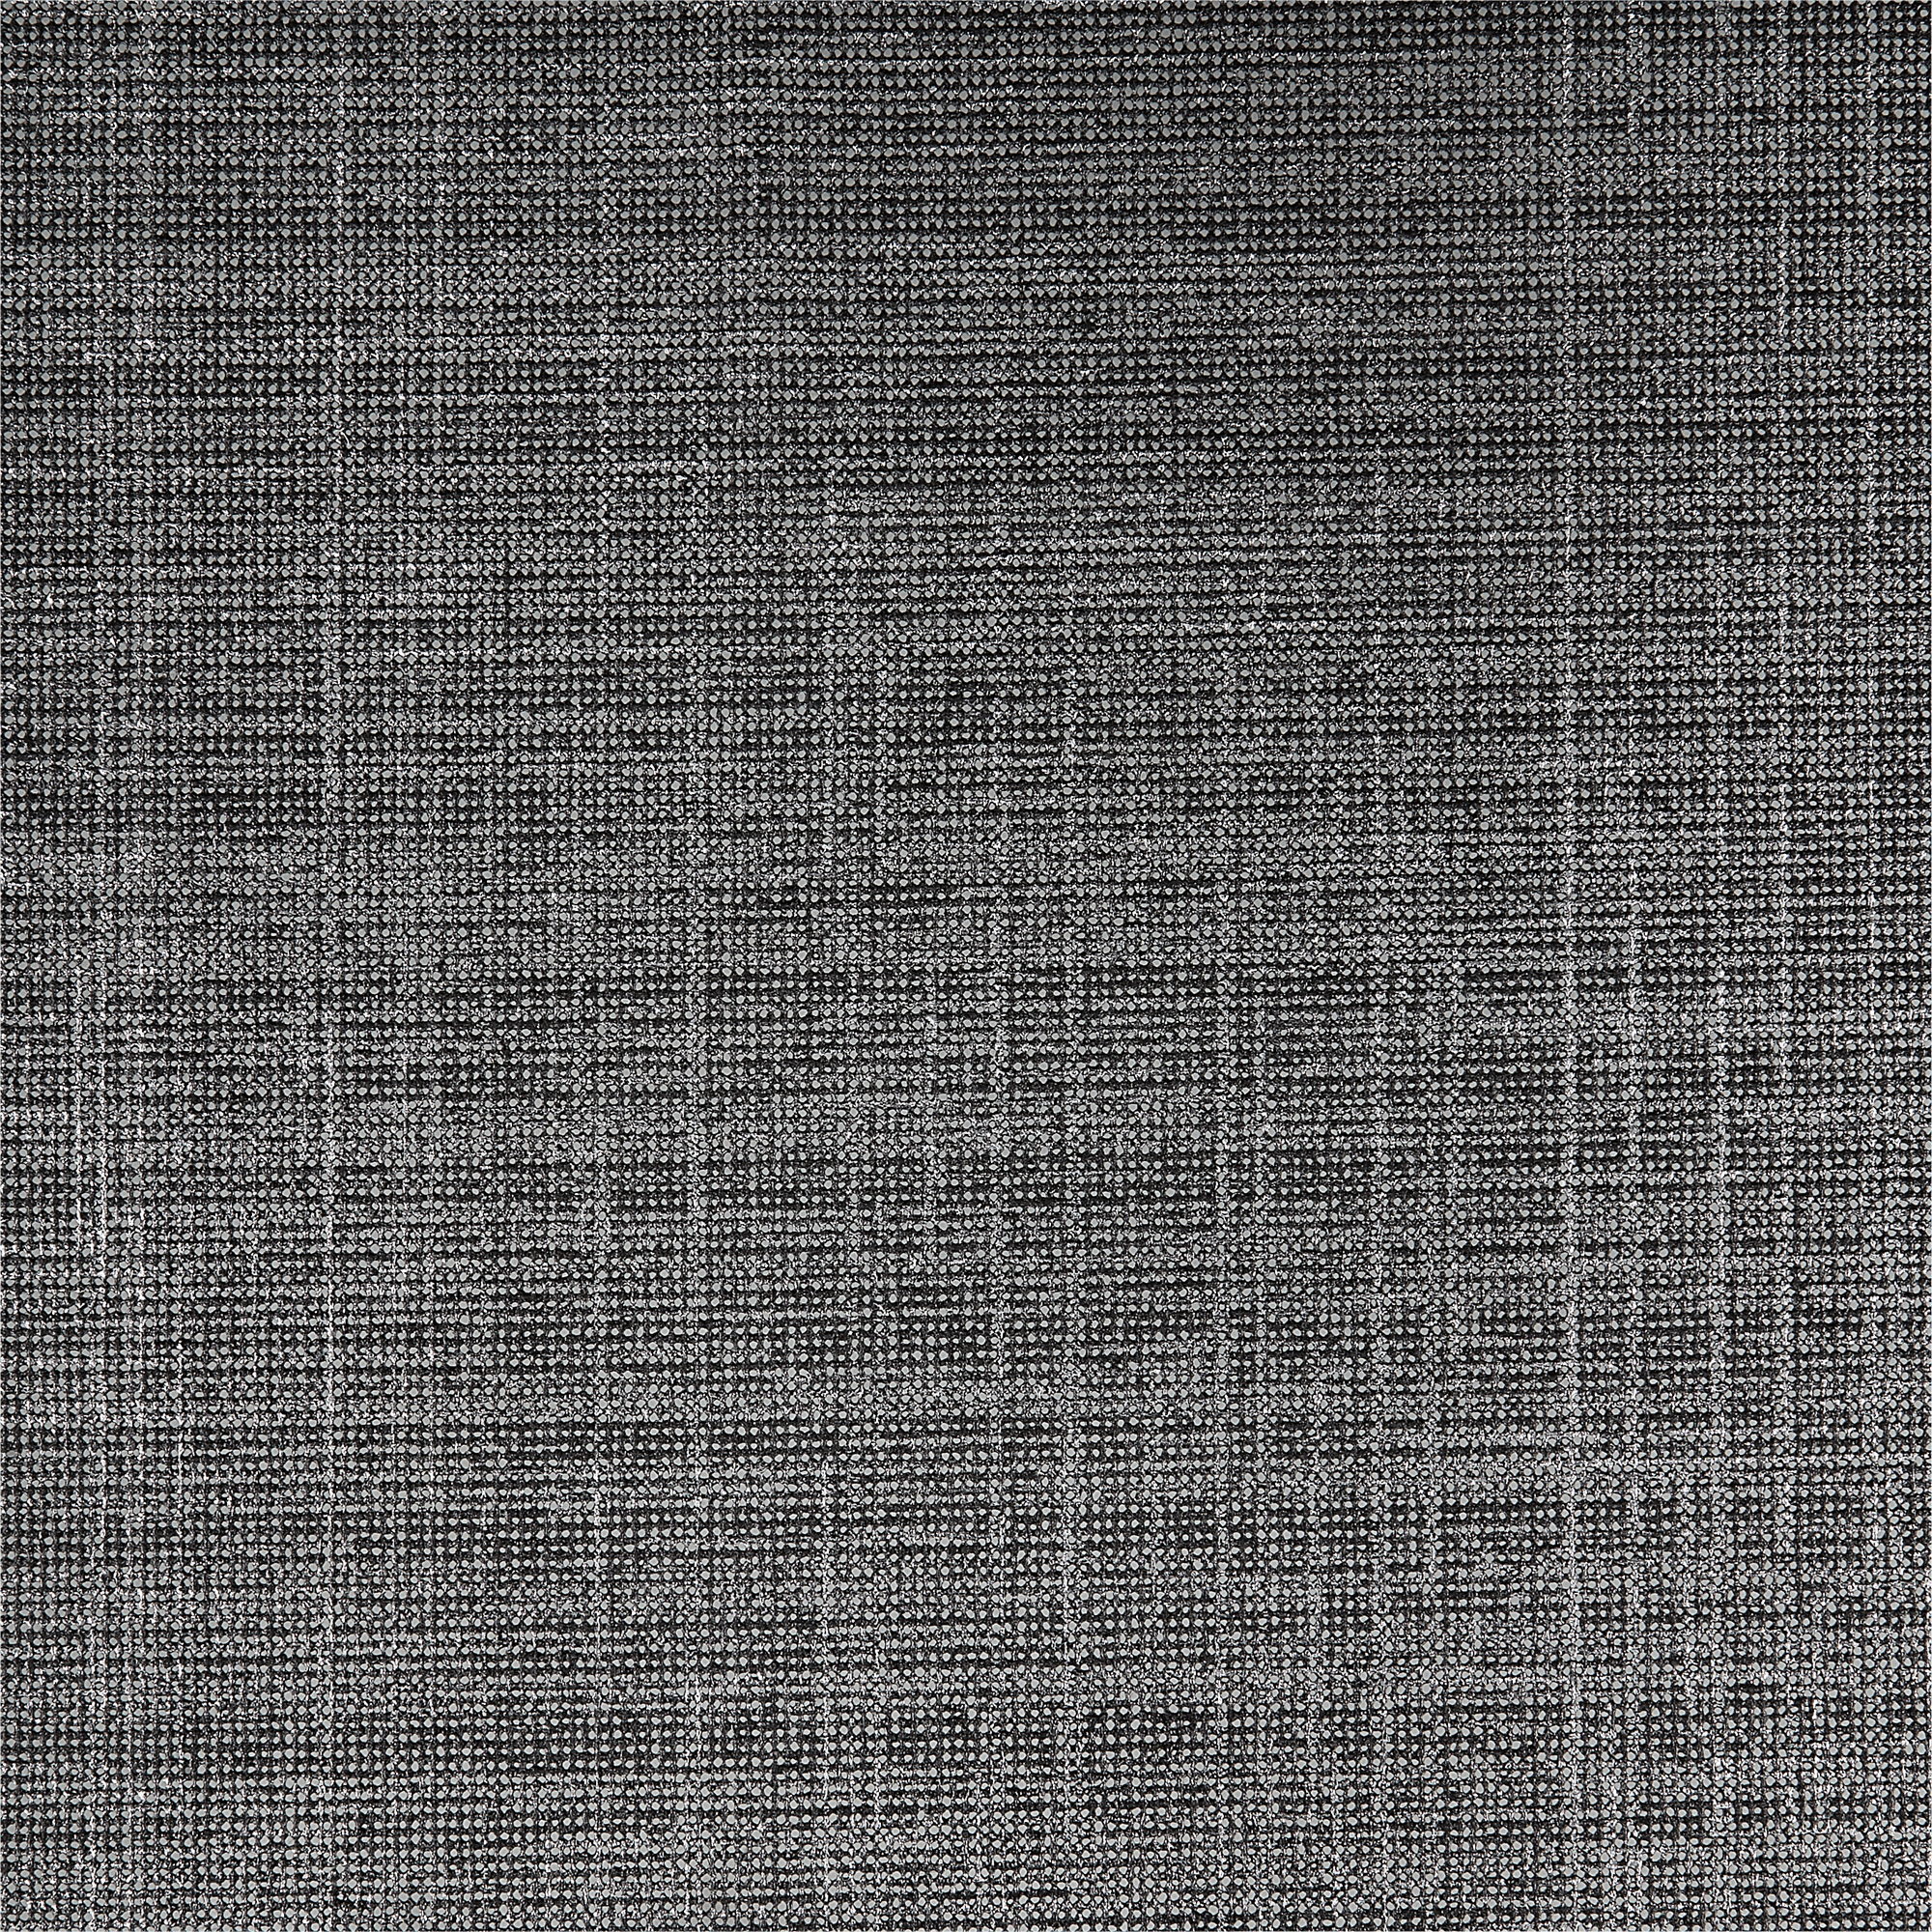 Tischläufer PVC Metallic schwarz/silbern 150 x 40 cm + product picture